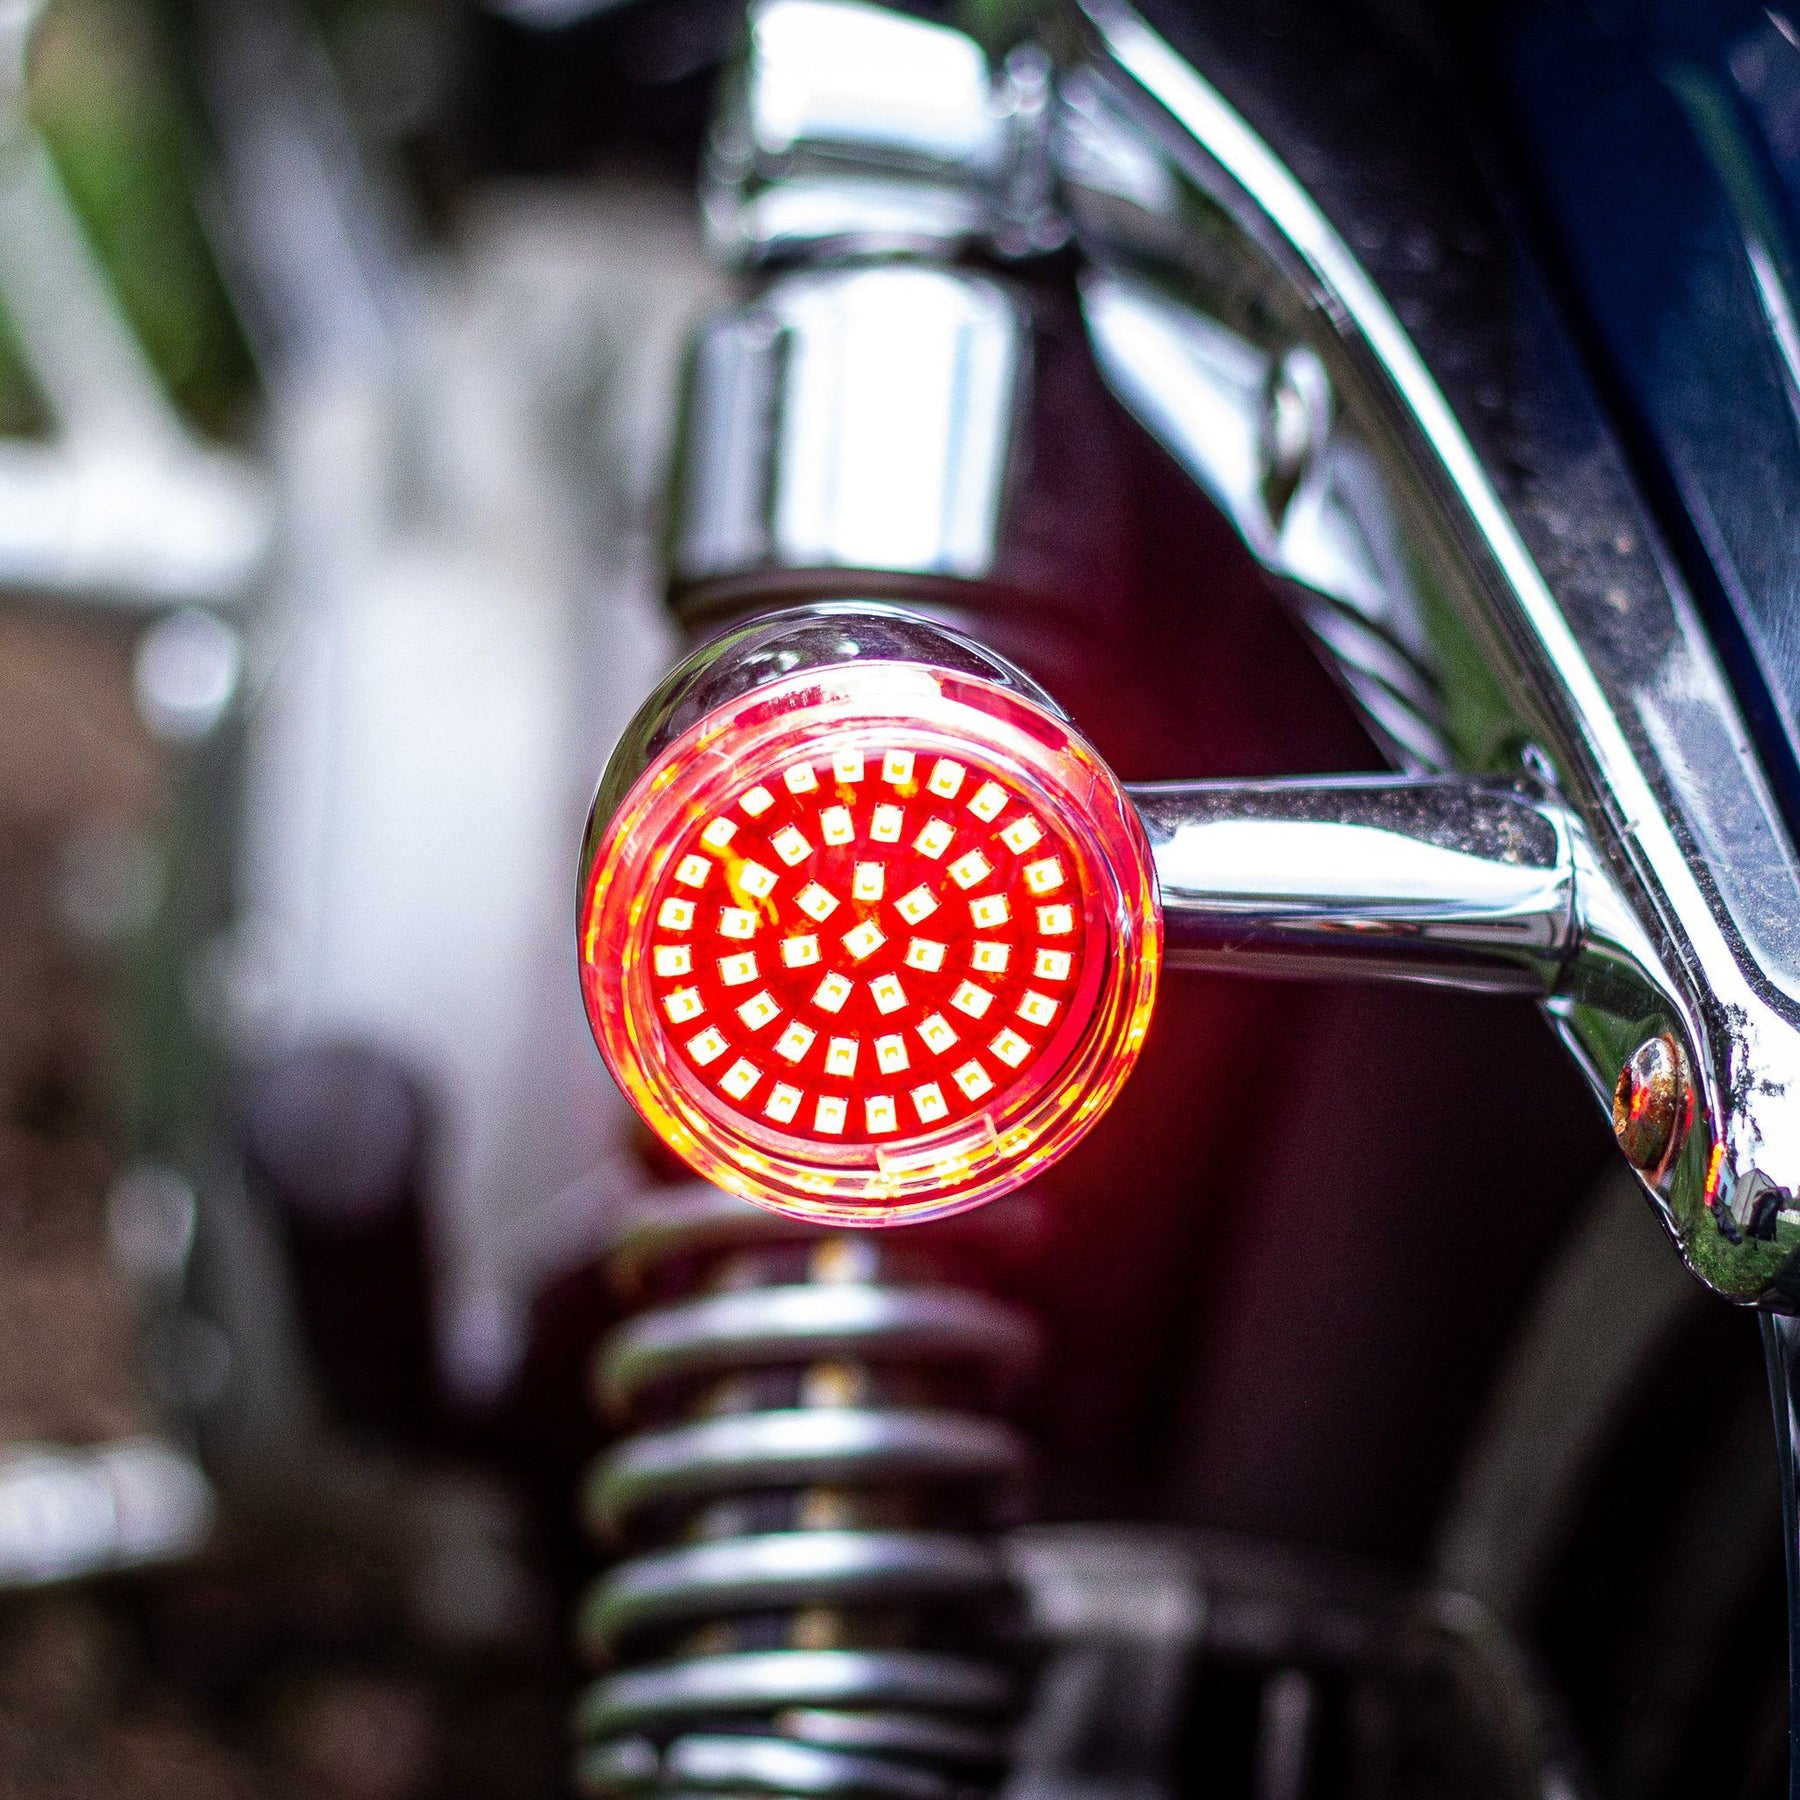 2” LED Rear Turn Signals - Eagle Lights SUNBURST Rear 2" LED Turn Signals For Harley Davidson